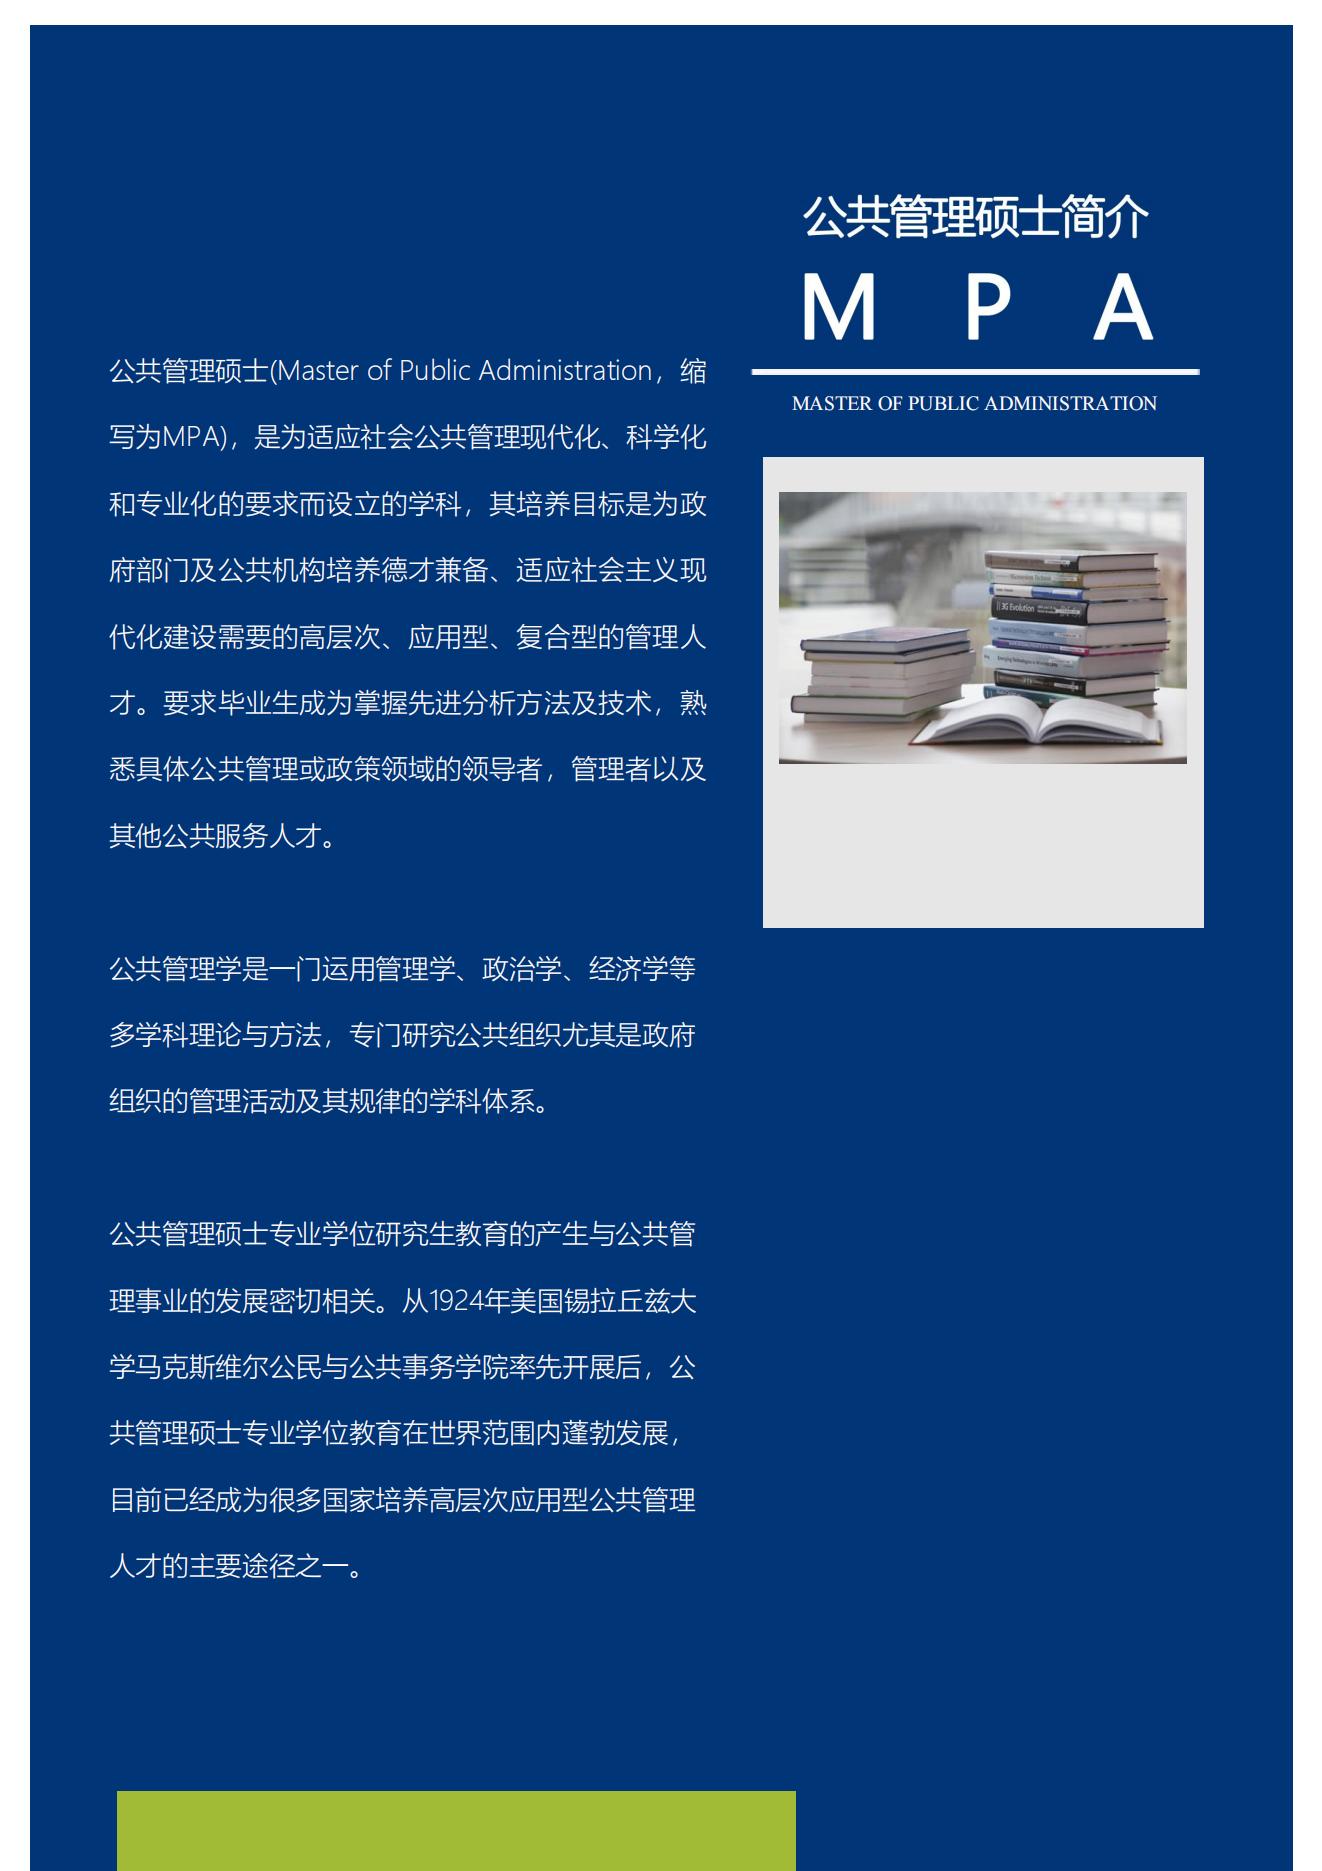 甘肃农大MBA、MPA招生简章2_02